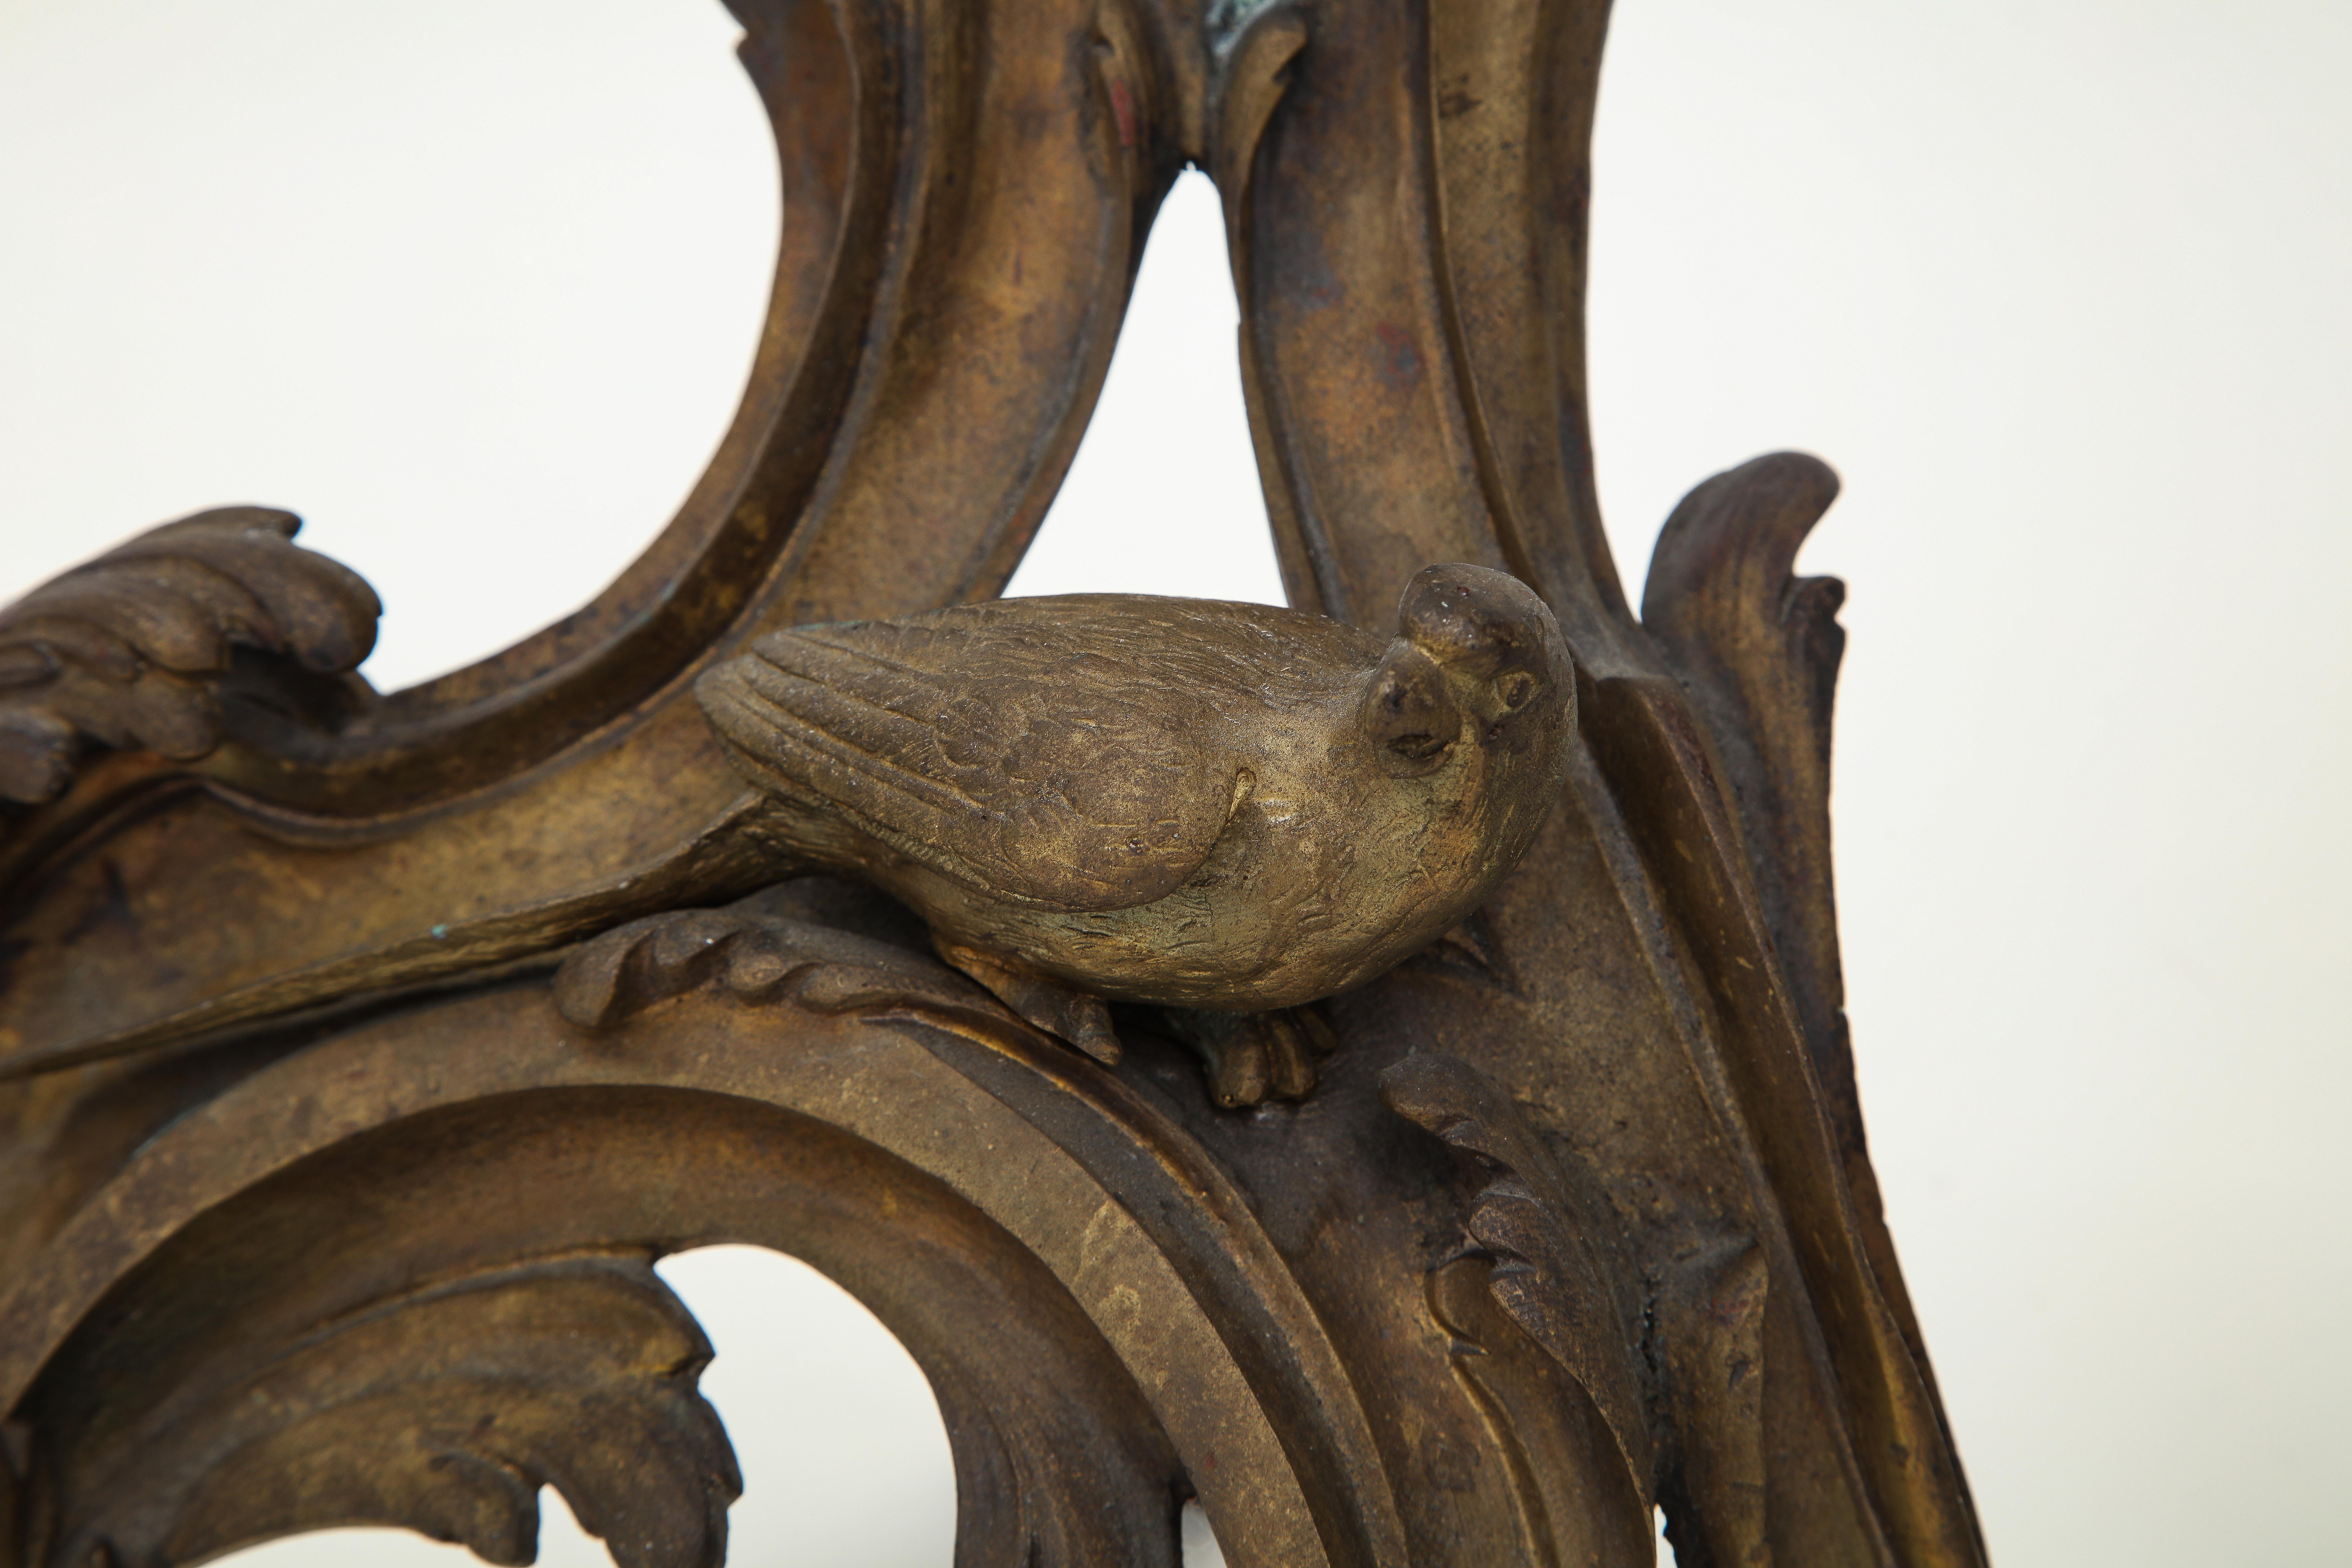 Jede Skulptur zeigt einen Vogel, der auf einer C-förmigen Blattrolle sitzt.

Provenienz: Der Nachlass von Samuel P. Reed.